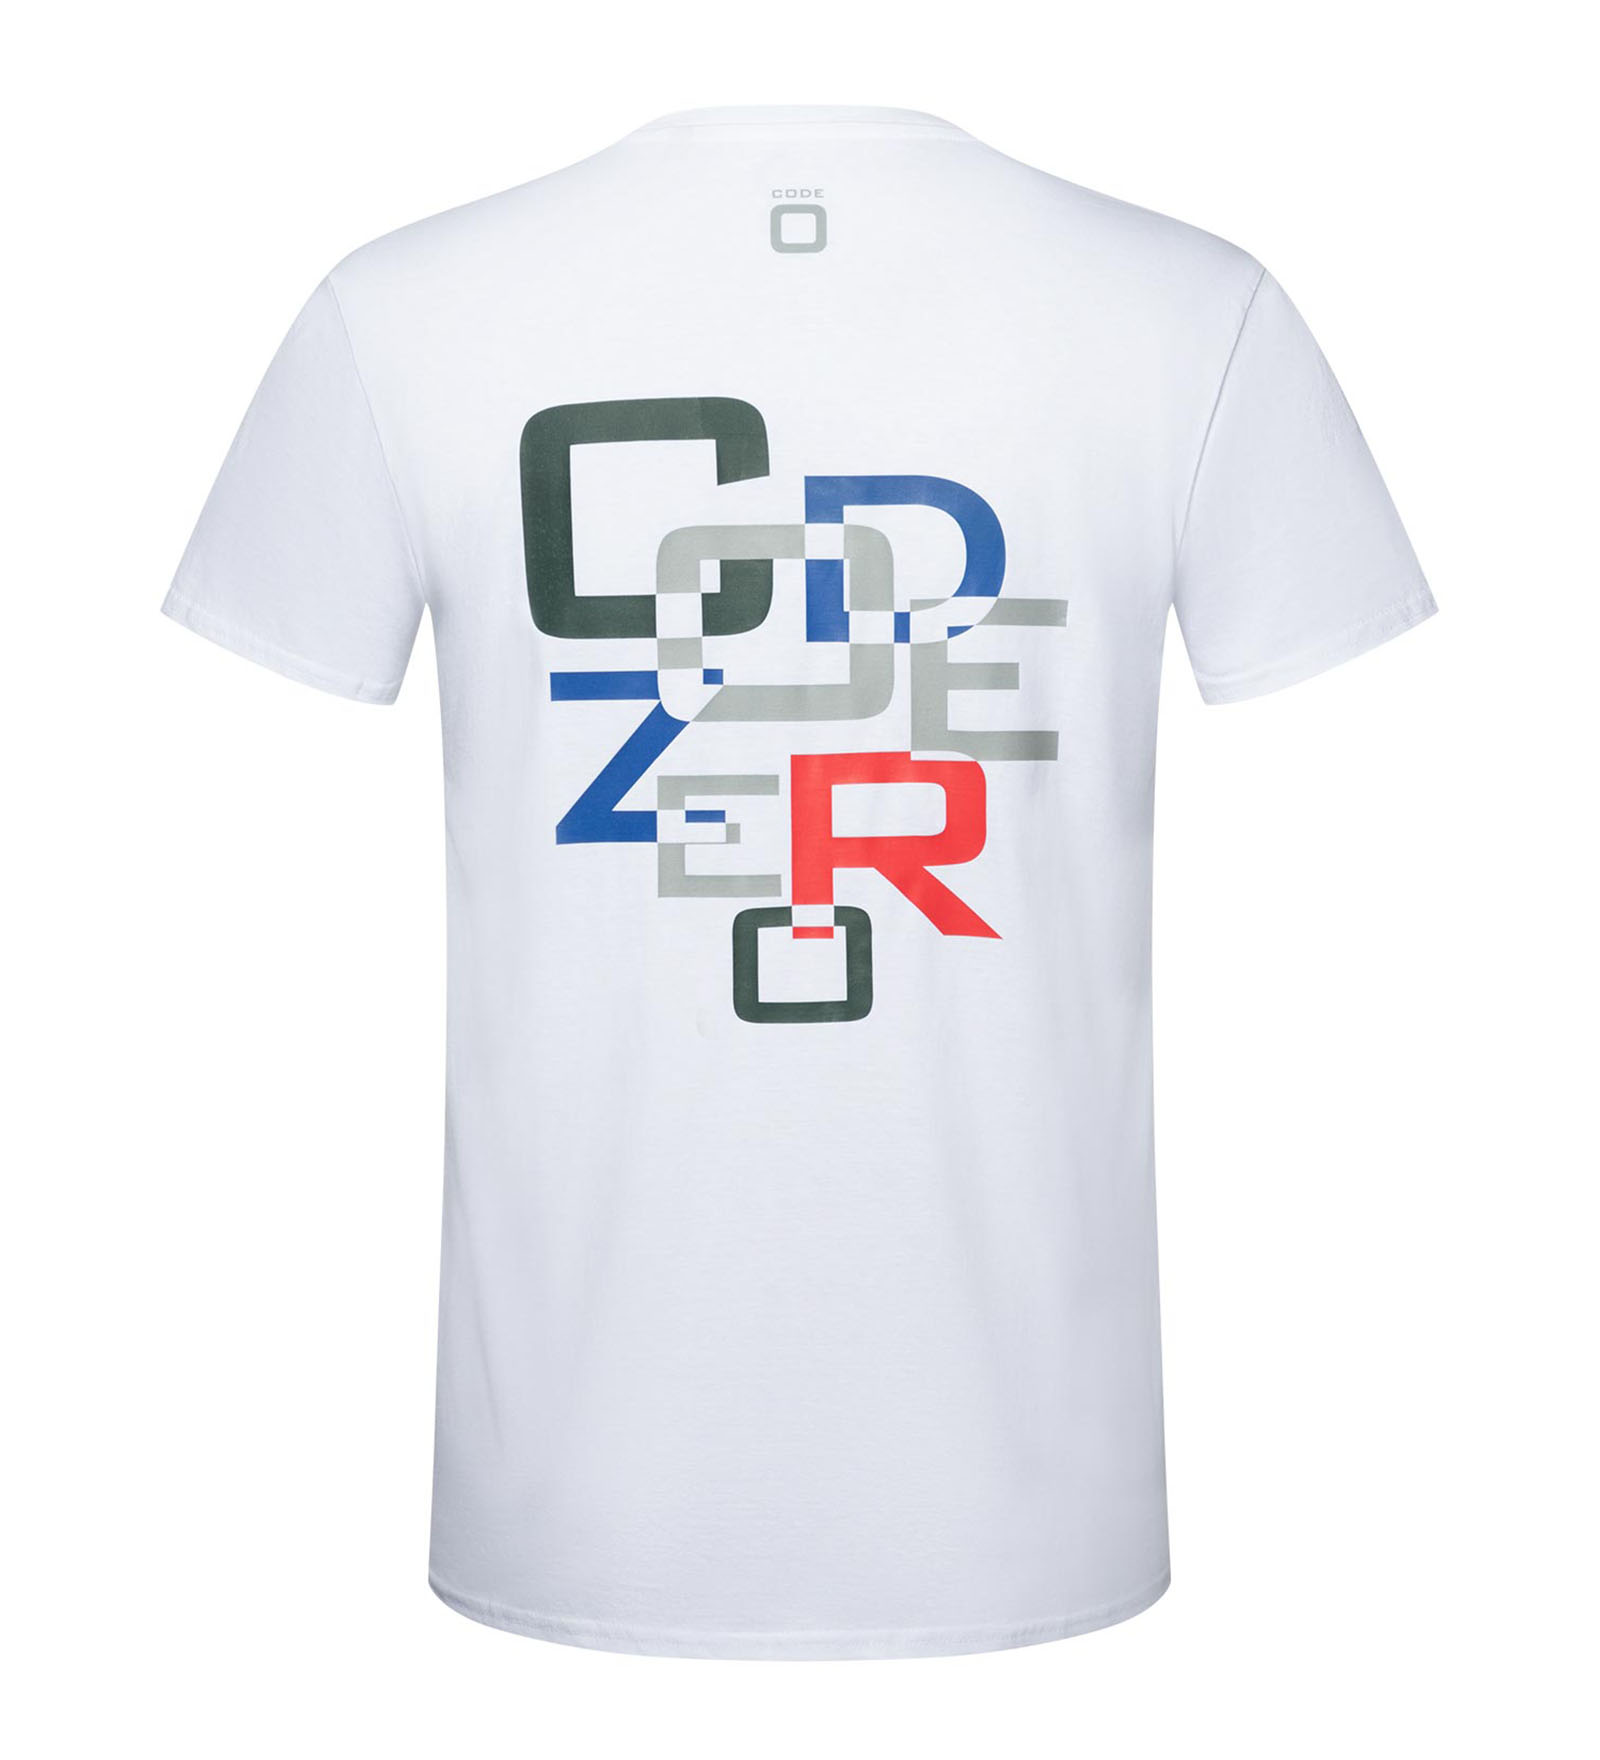 T-Shirt CODE-ZERO white